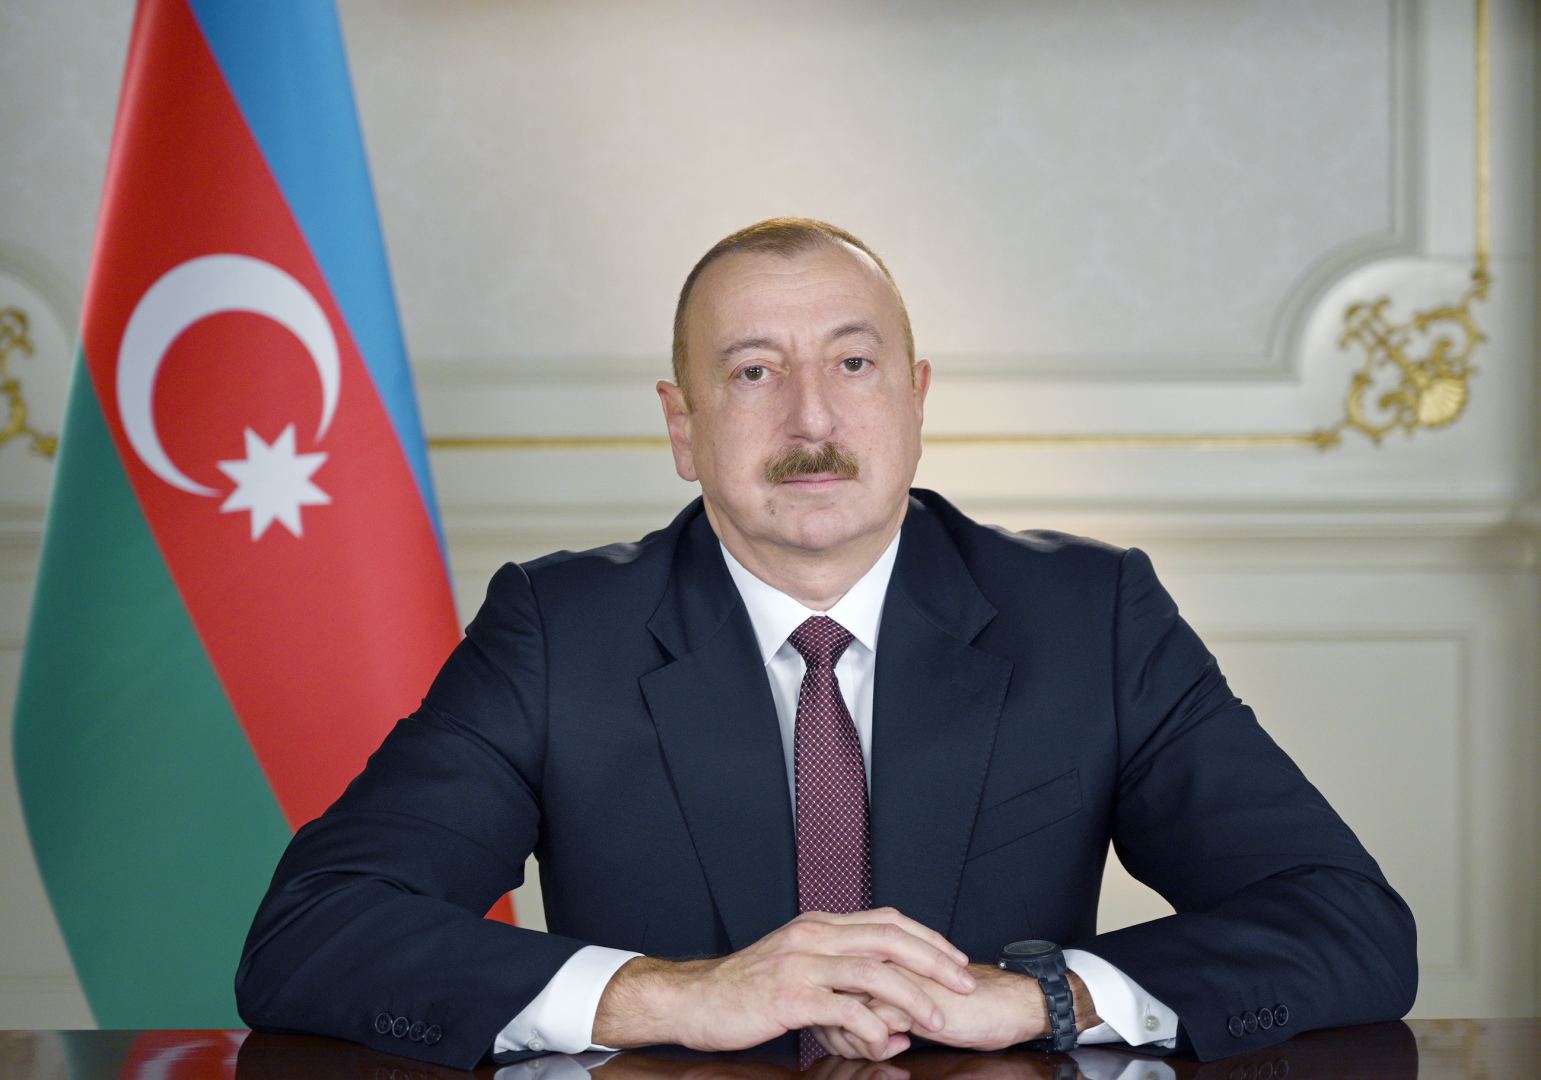  Ильхам Алиев: Я возвращаю освобожденному Мадагизу его историческое название - Суговушан